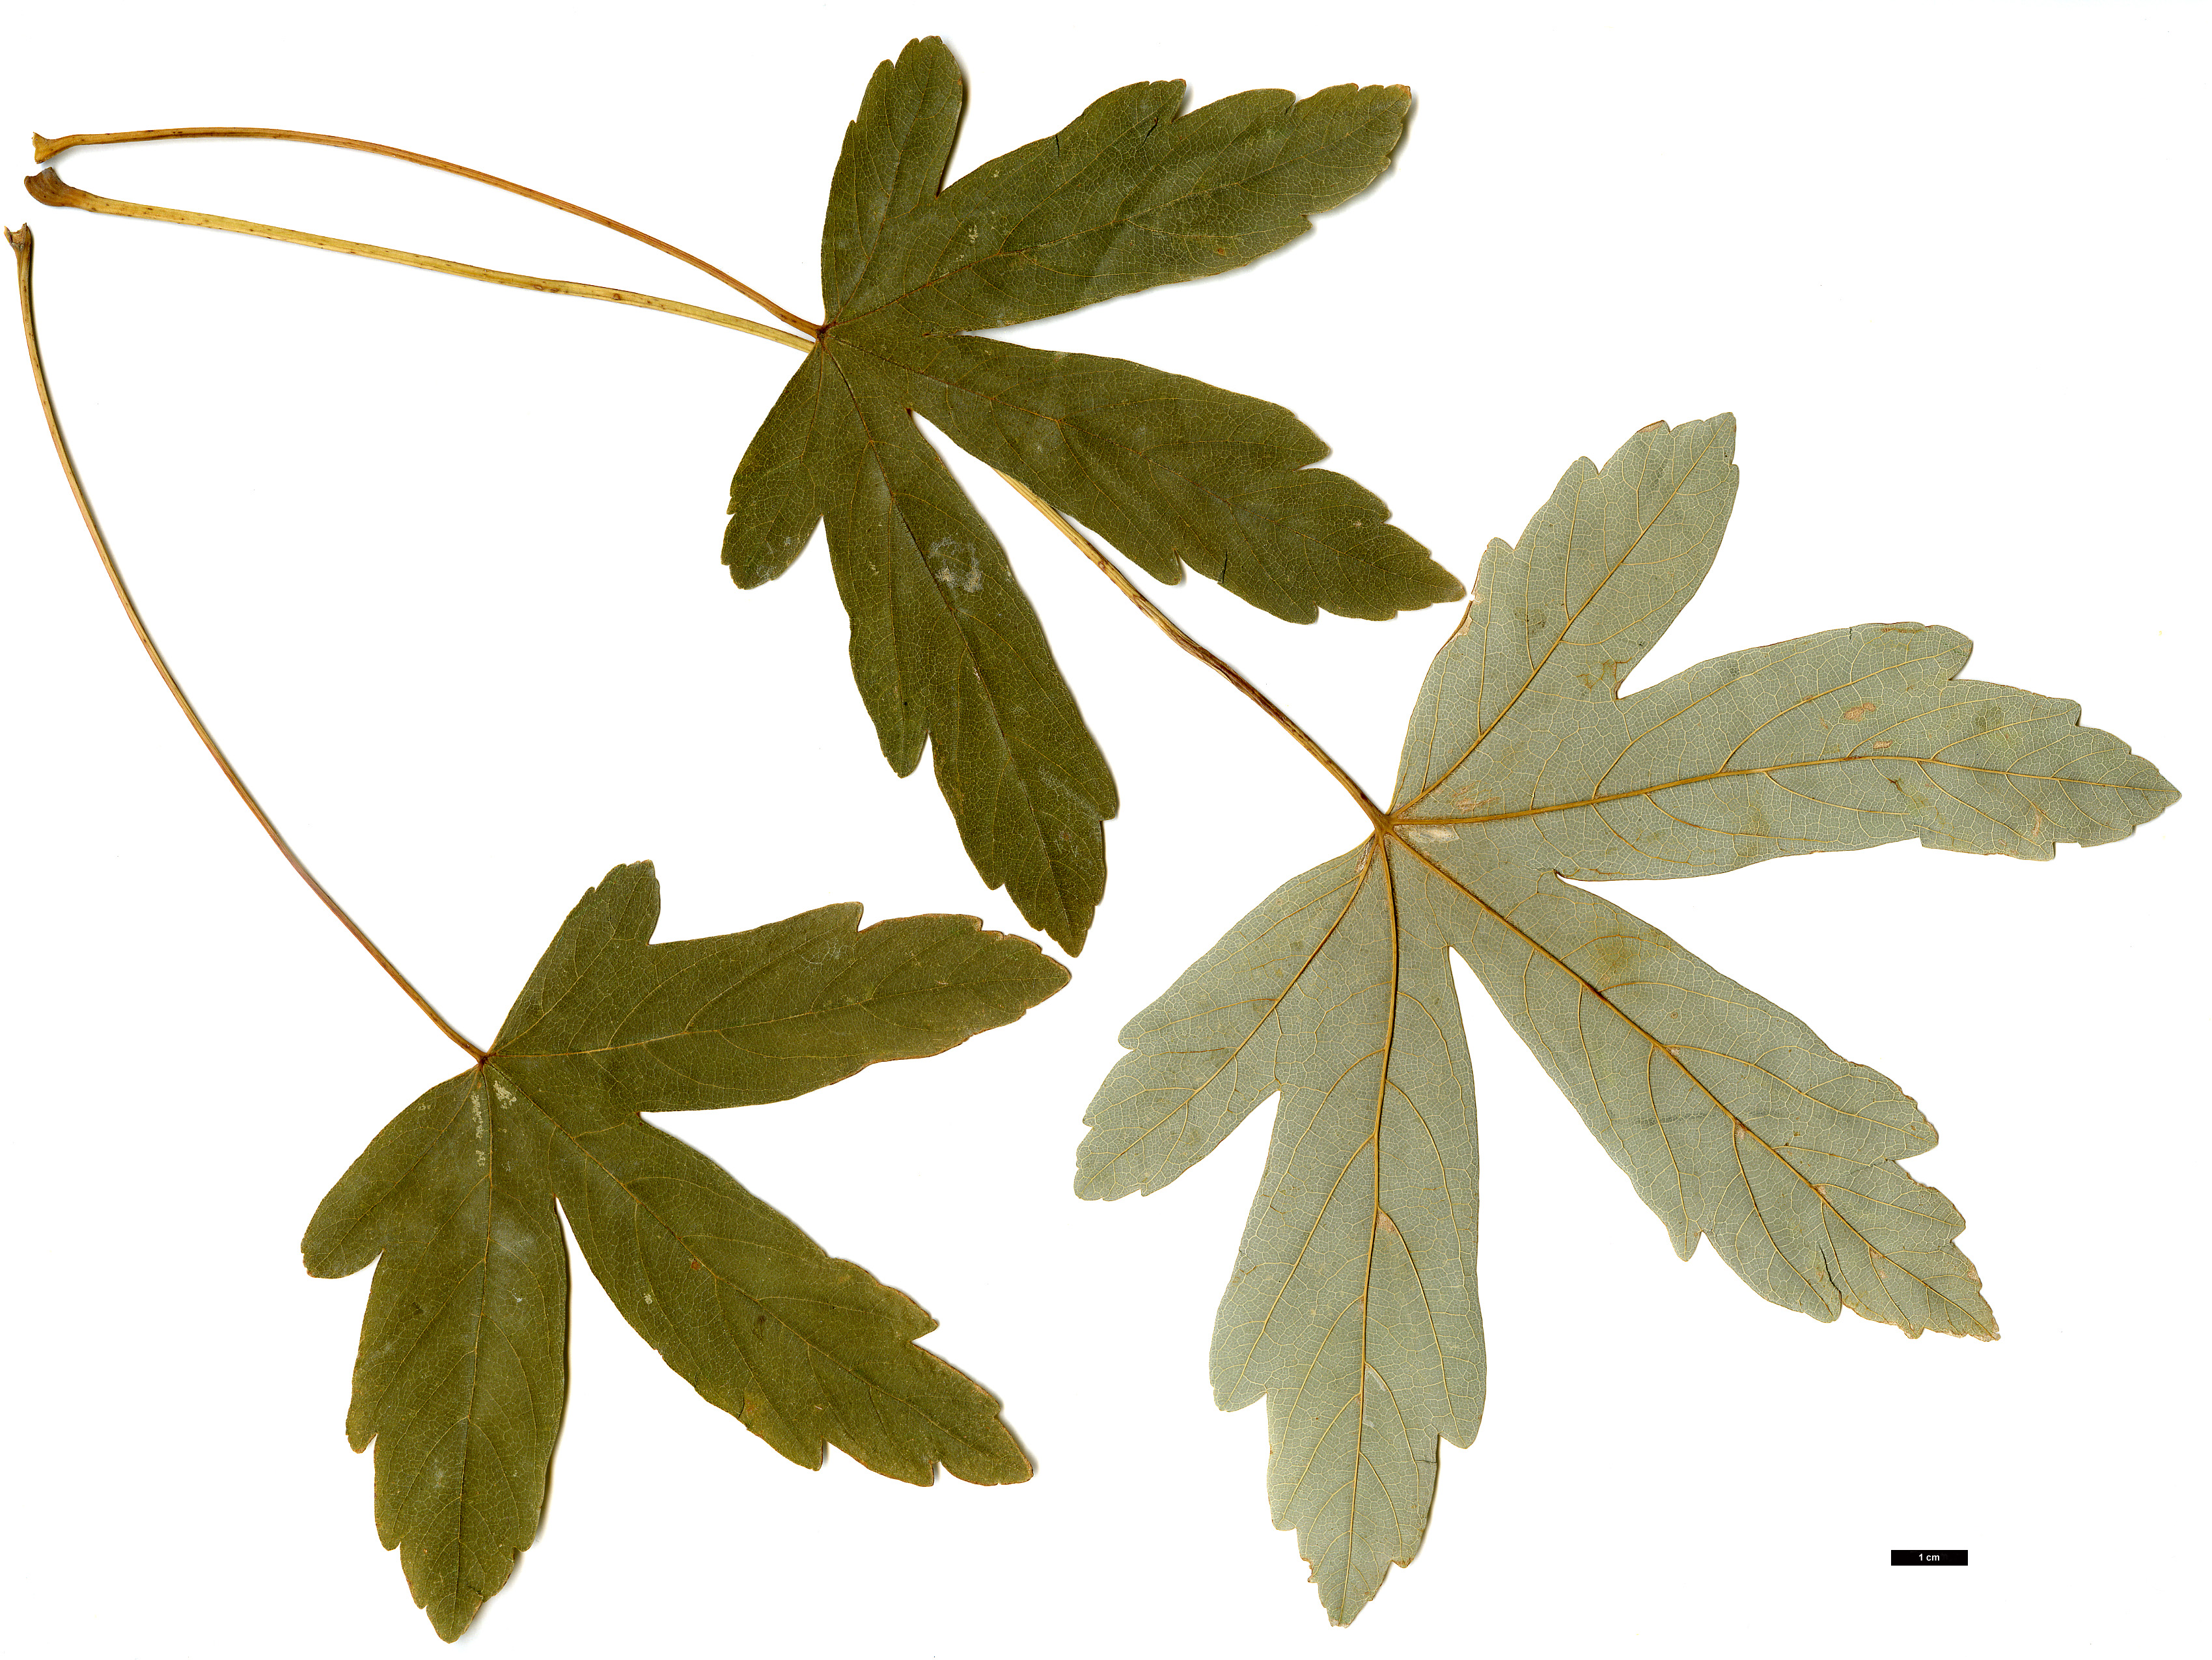 High resolution image: Family: Sapindaceae - Genus: Acer - Taxon: heldreichii - SpeciesSub: subsp. heldreichii